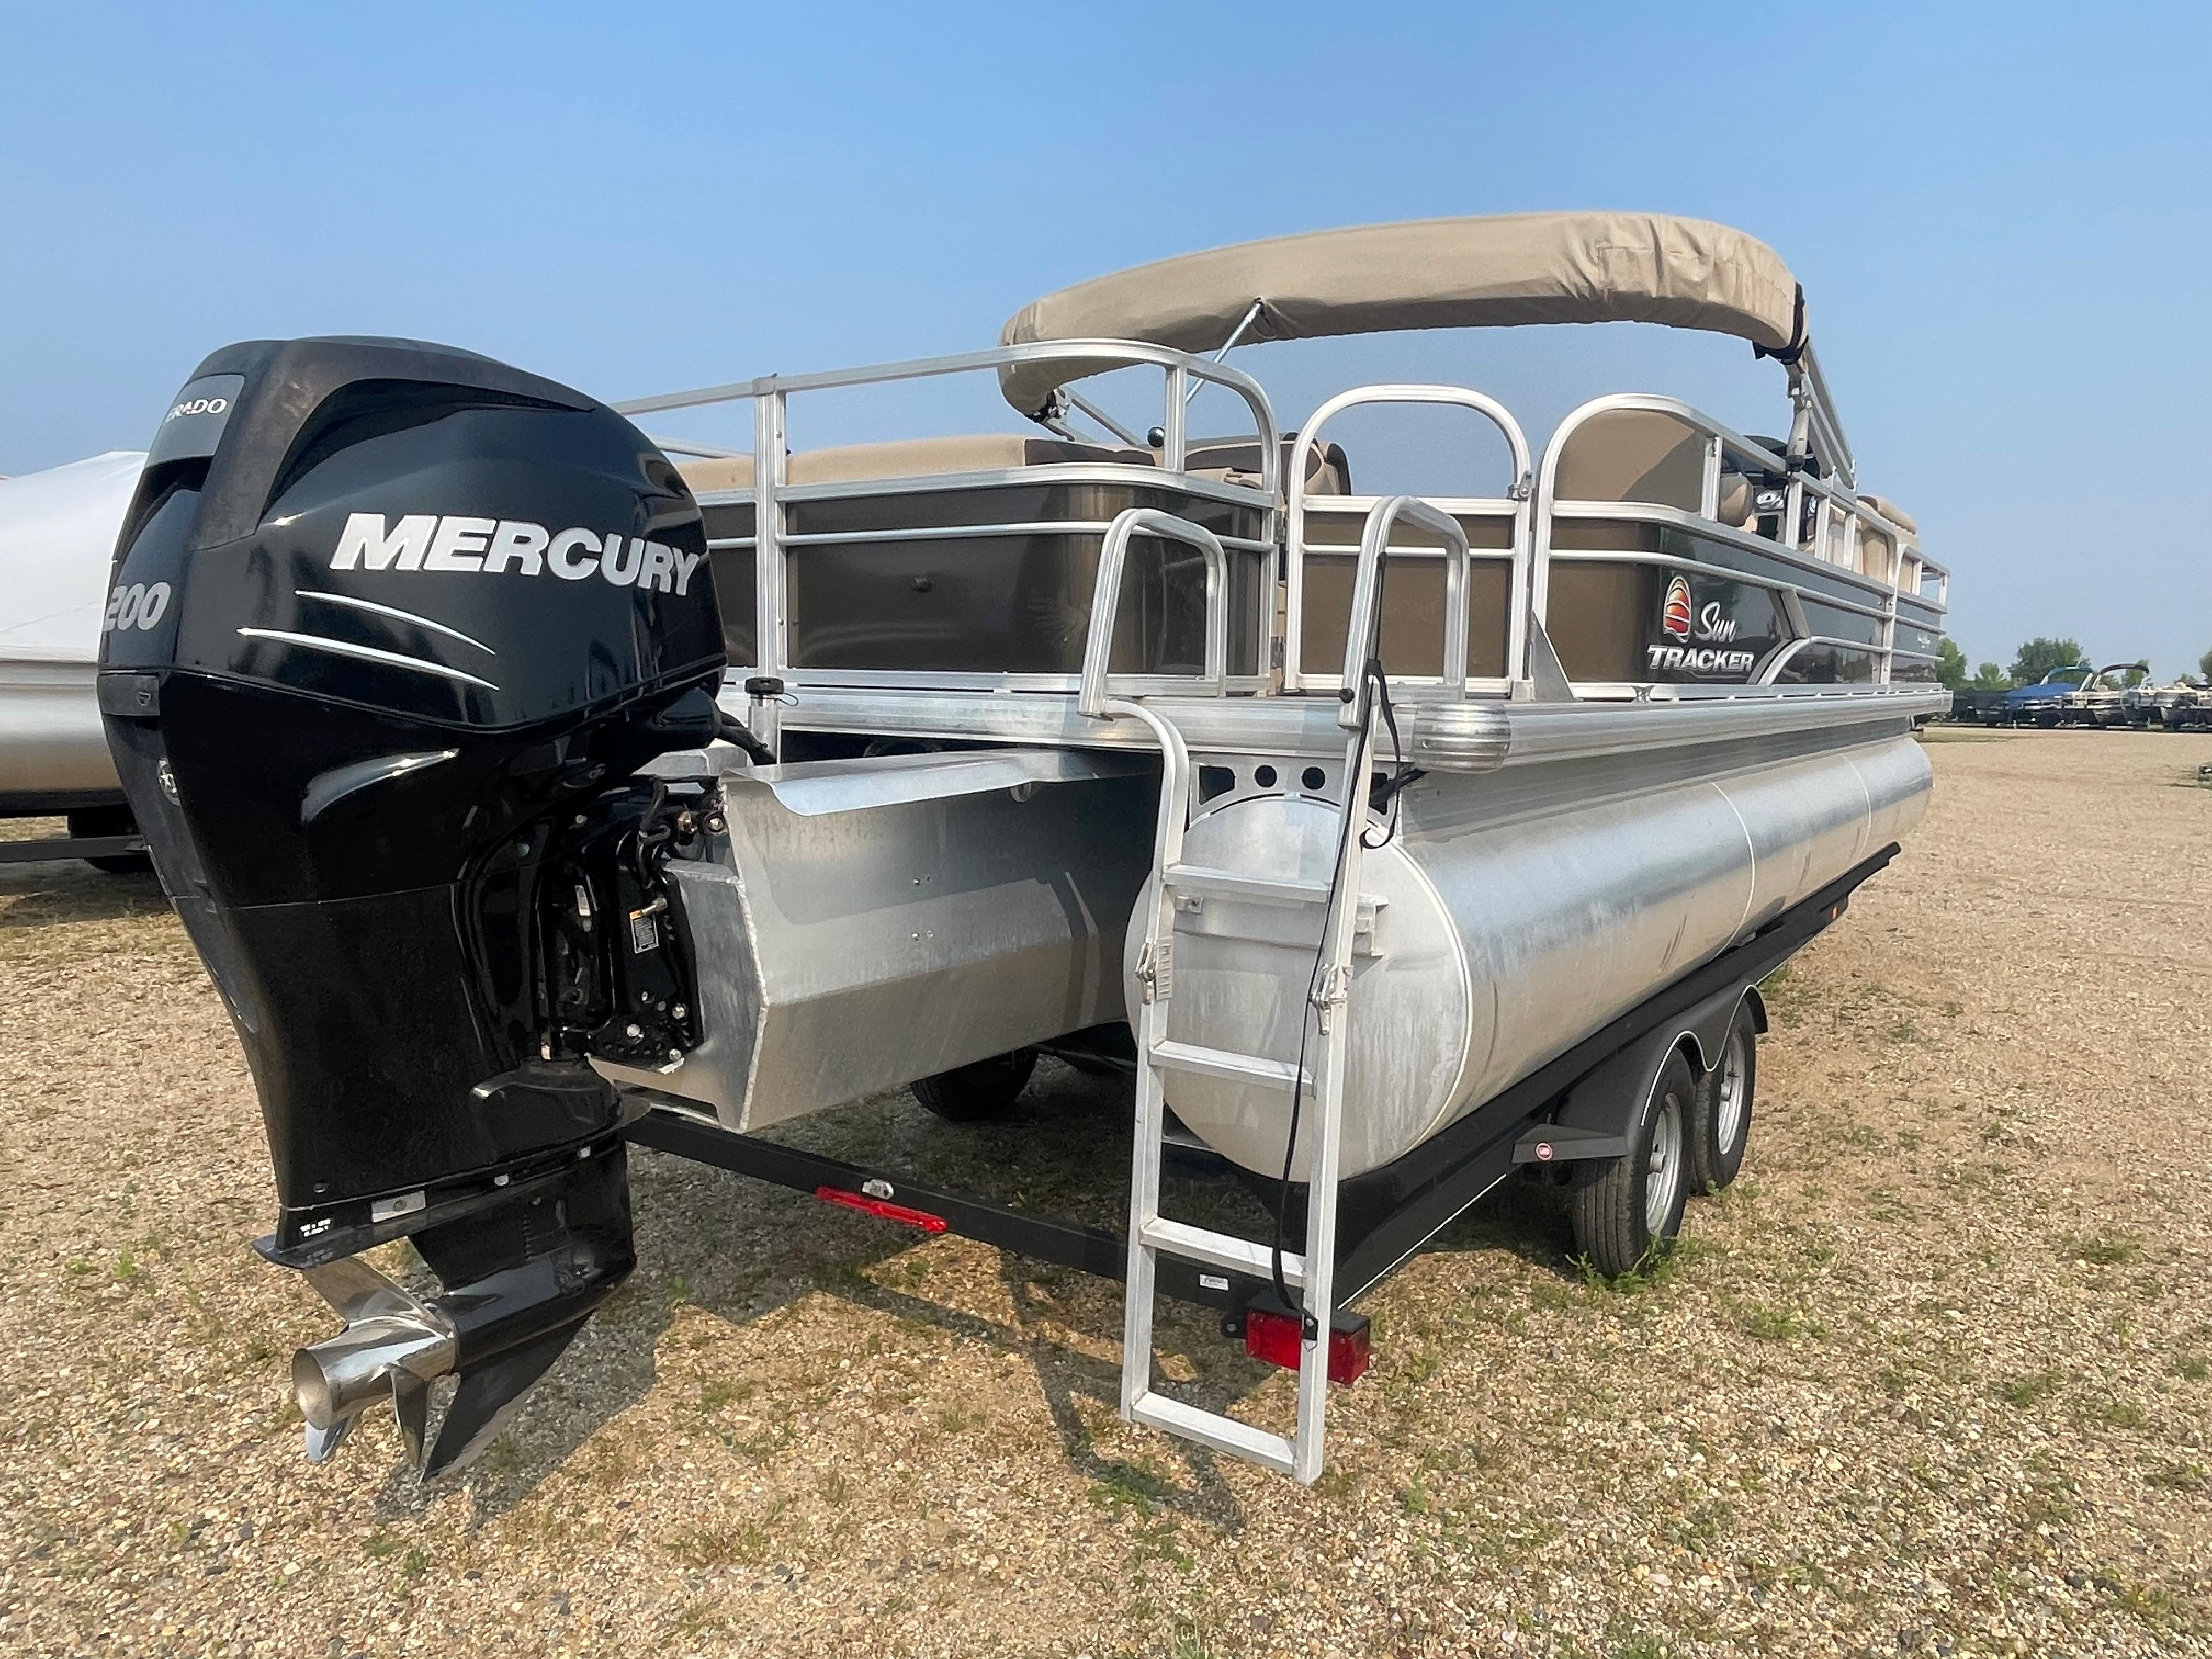 2018 Sun Tracker Fishin' Barge 24 XP3